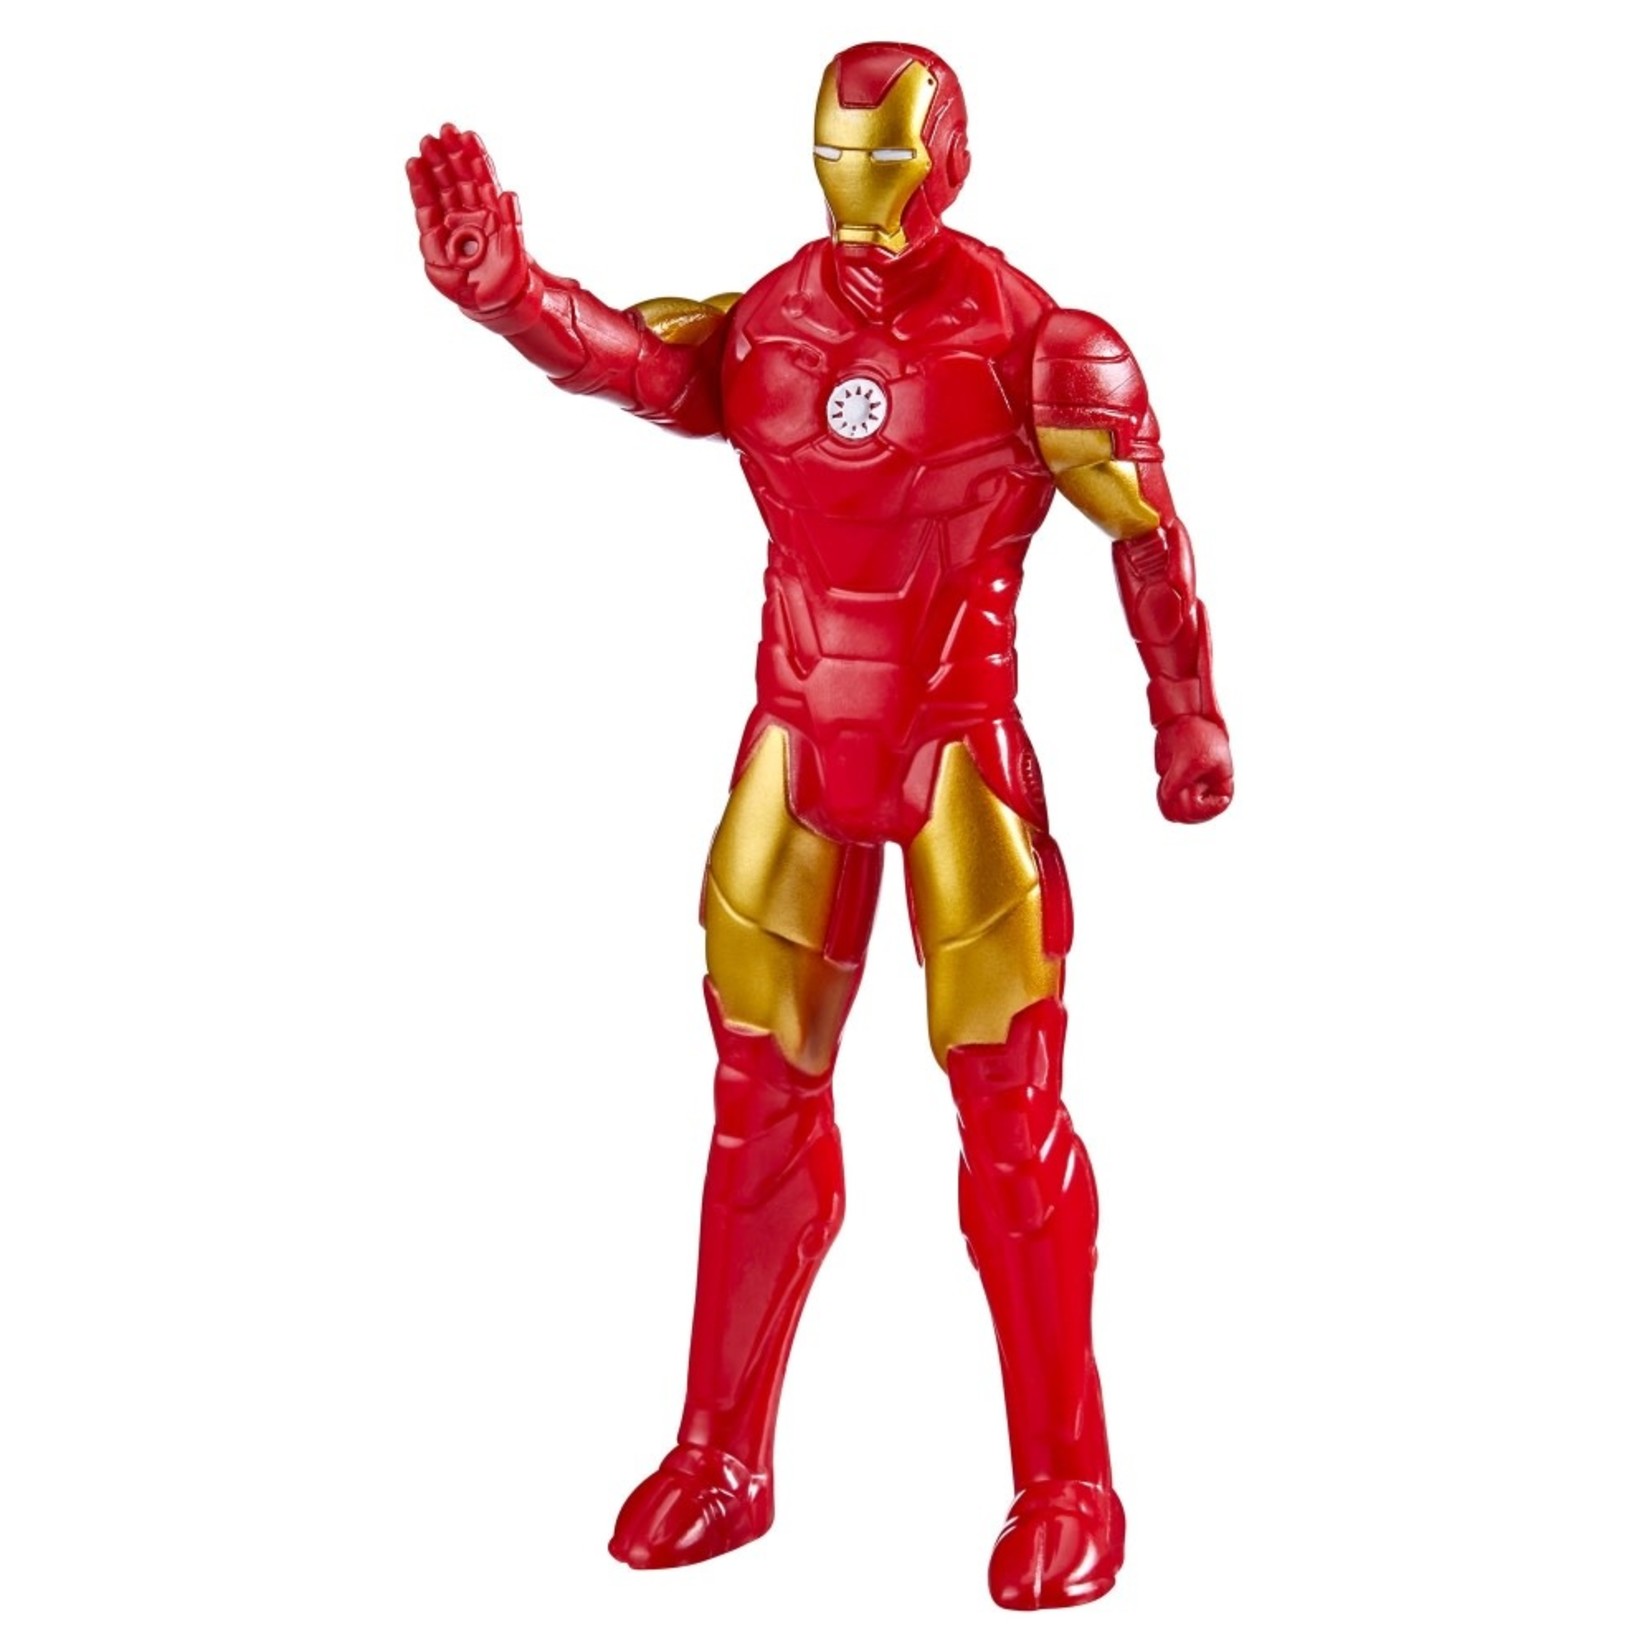 Hasbro Marvel Iron Man Action Figure